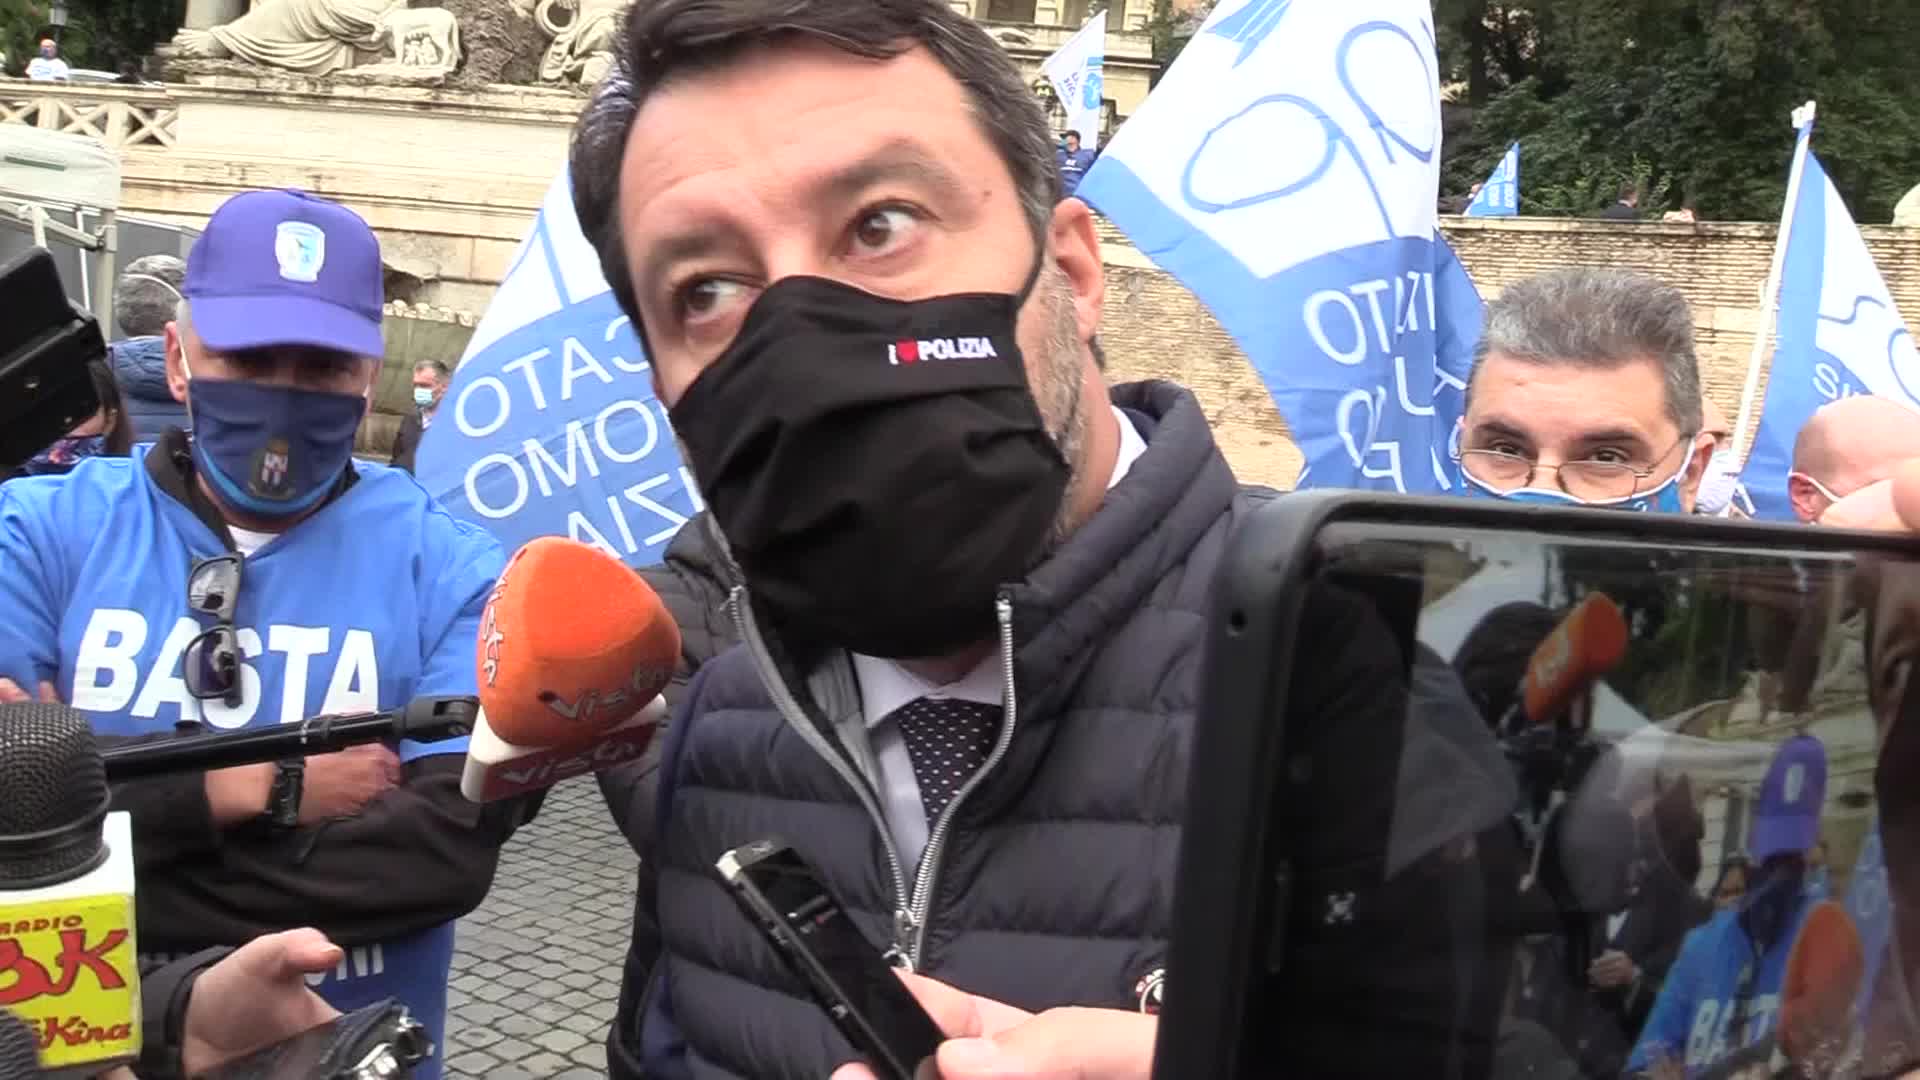 Salvini: "No scuole chiuse, aumentare presenza trasporti pubblici"